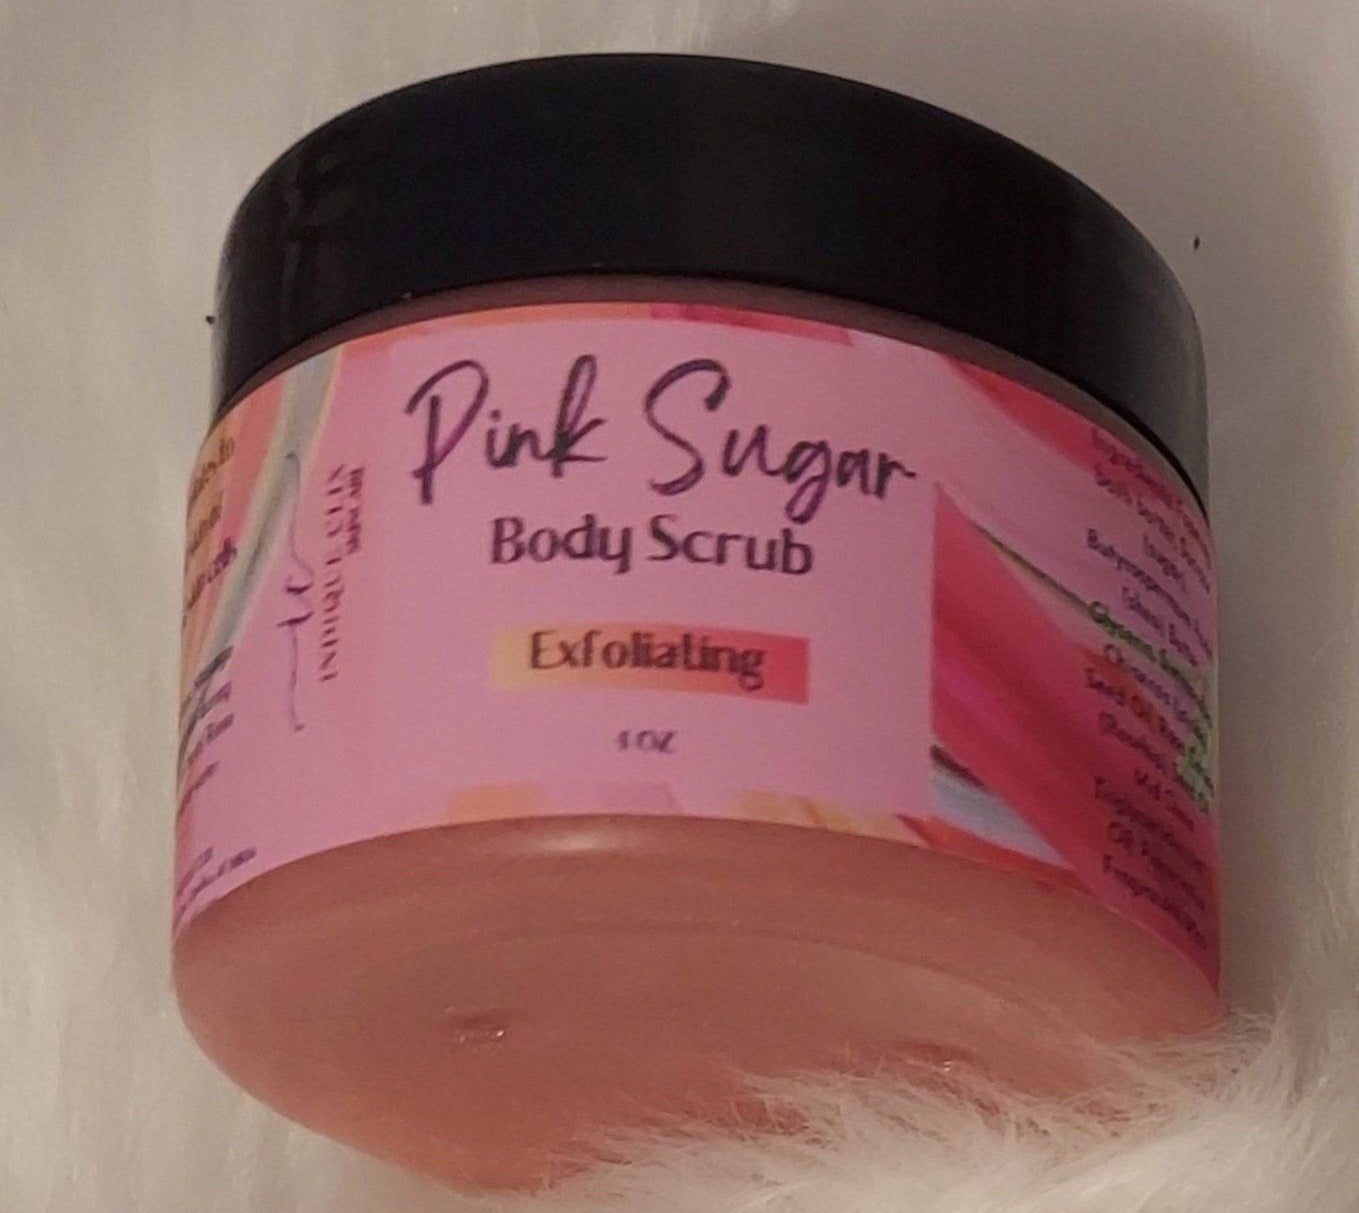 Pink Sugar Body Scrub - Premium  from indiqueclix.com - Just $13! Shop now at indiqueclix.com